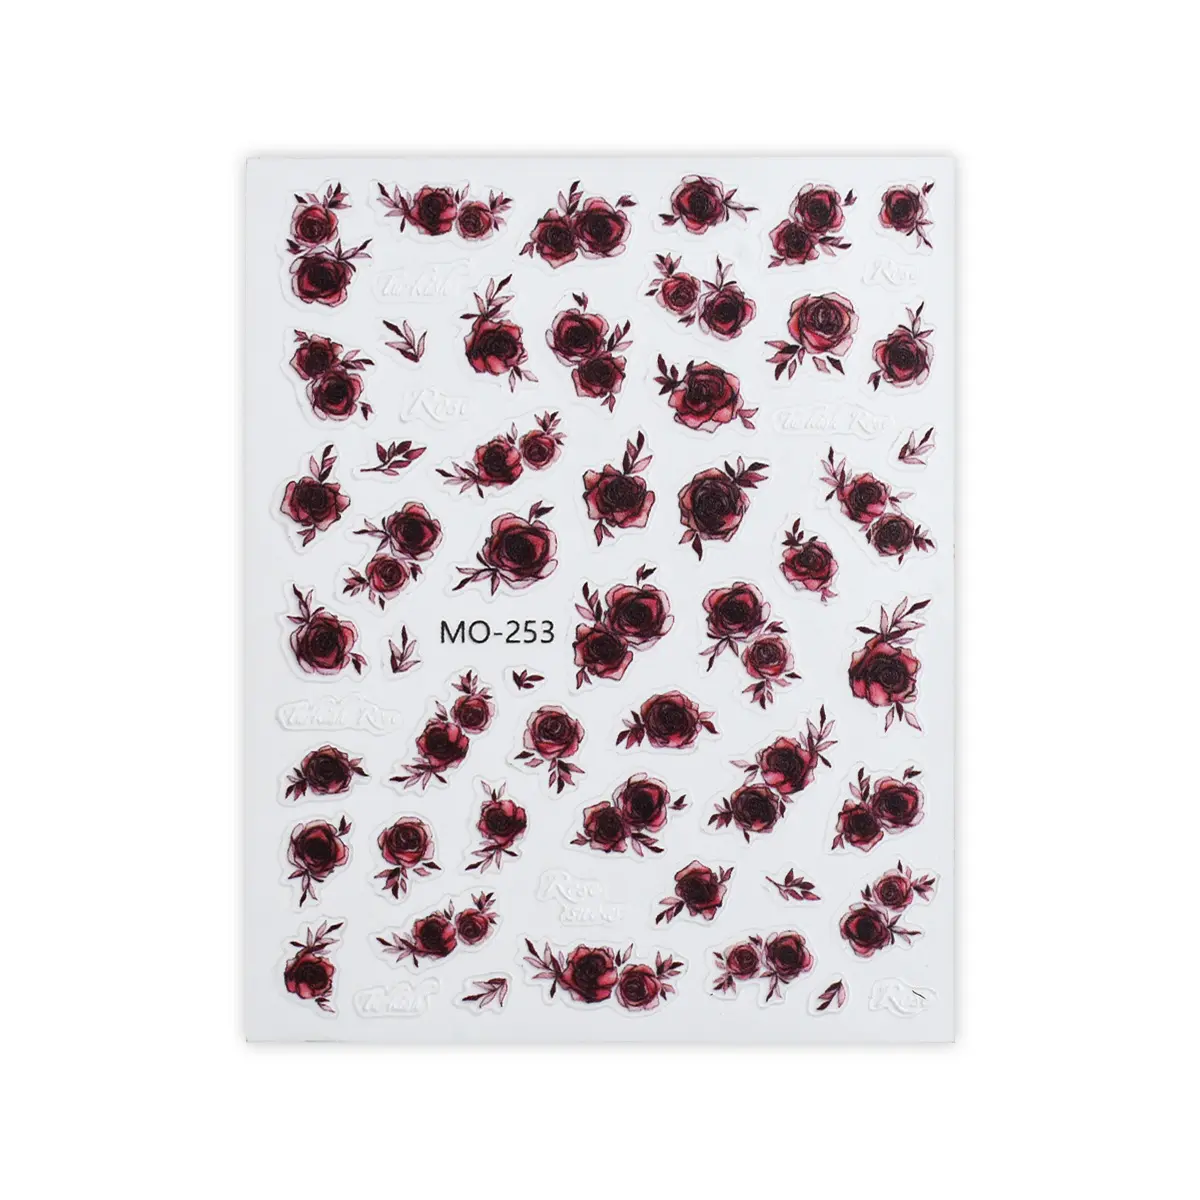 Neuzugang handgezeichneter rosa Nagel-Aufkleber Relief 3D schwarz weiß halbtransparent blutrot Blume Nagelkunst-Aufkleber Dekorationen